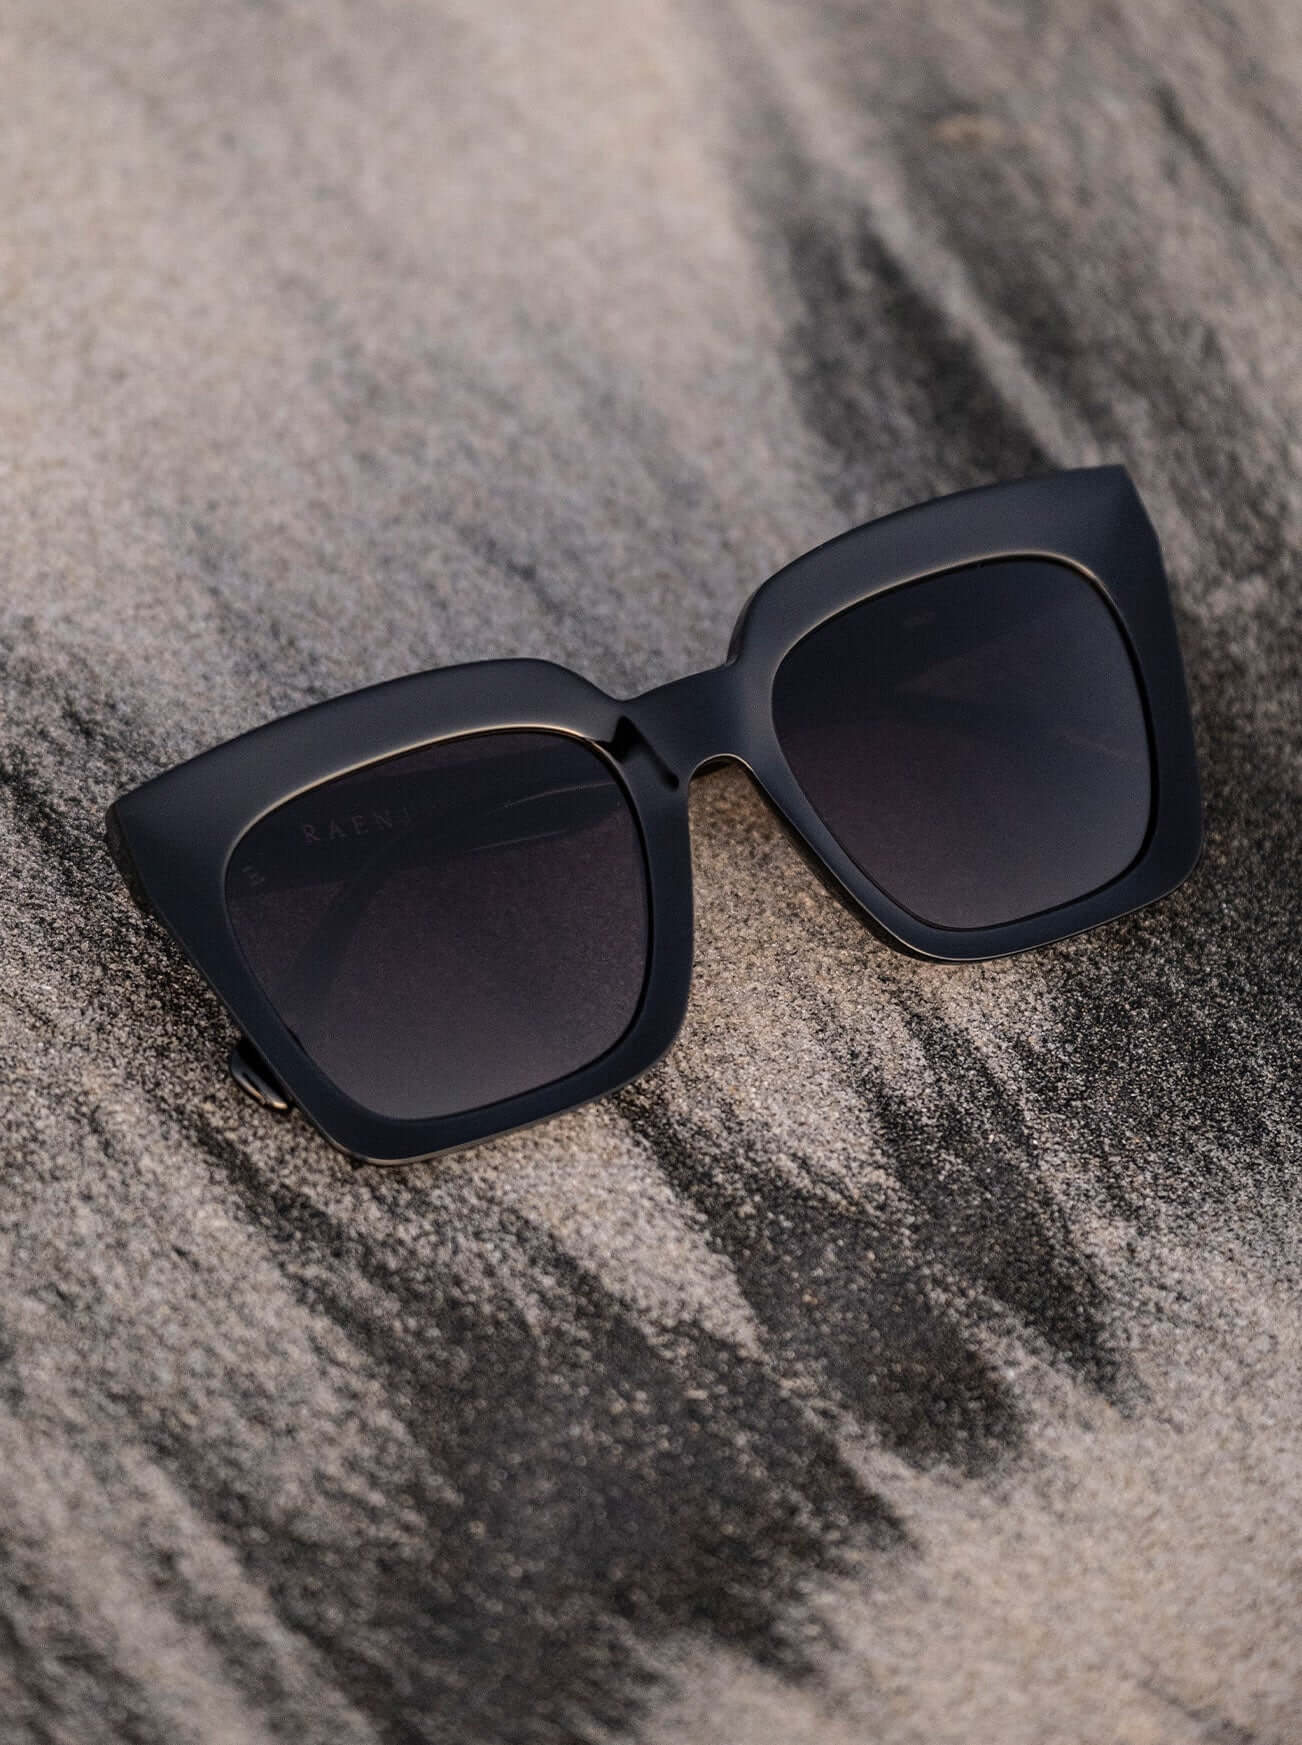 Square sunglasses for women